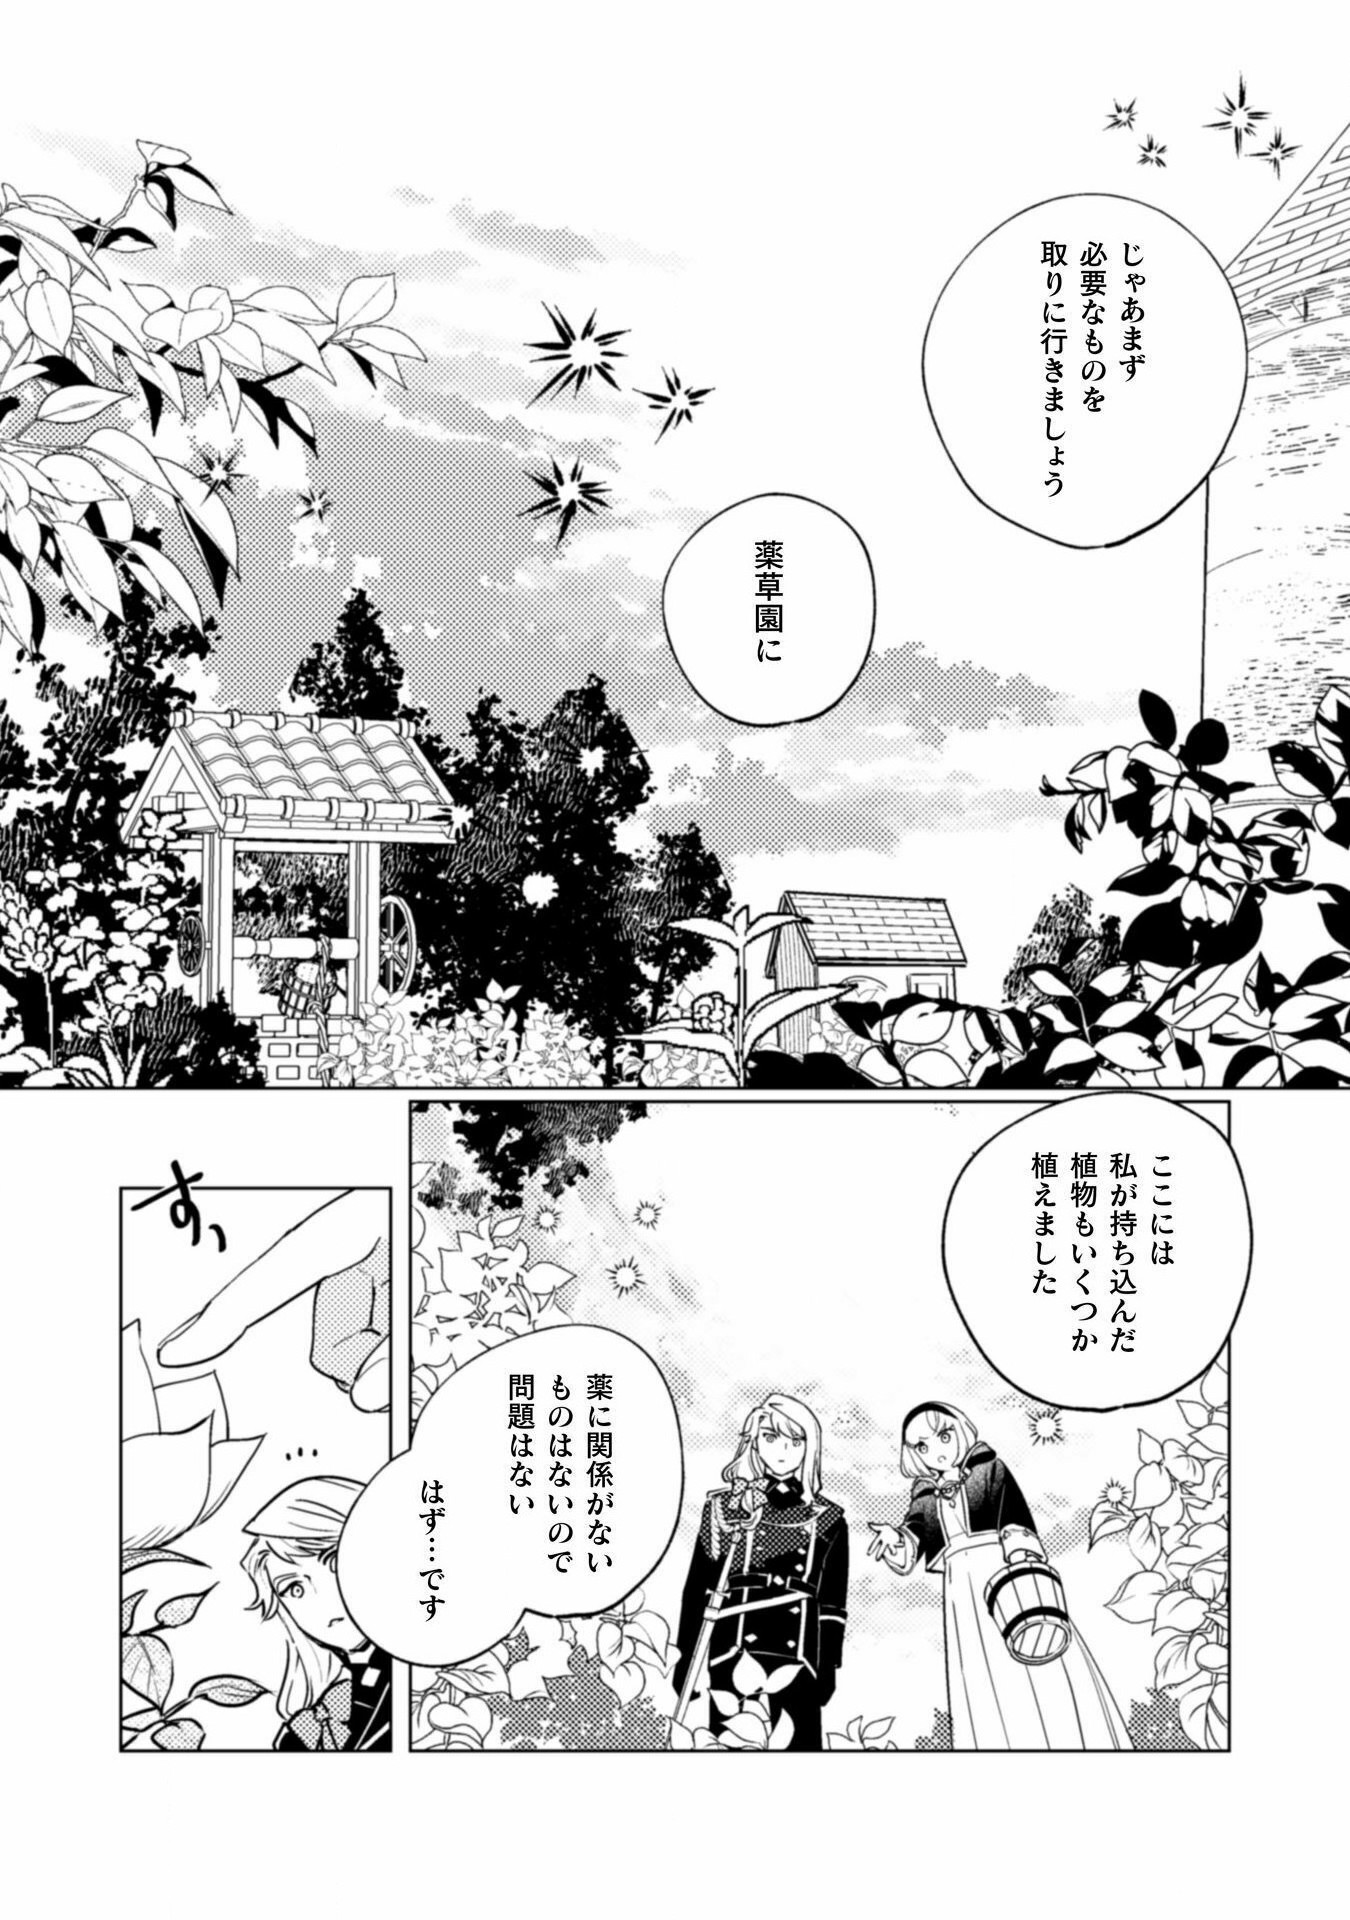 Uranaishi ni wa Hana Kishi no Koigokoro ga Mieteimasu - Chapter 23 - Page 3